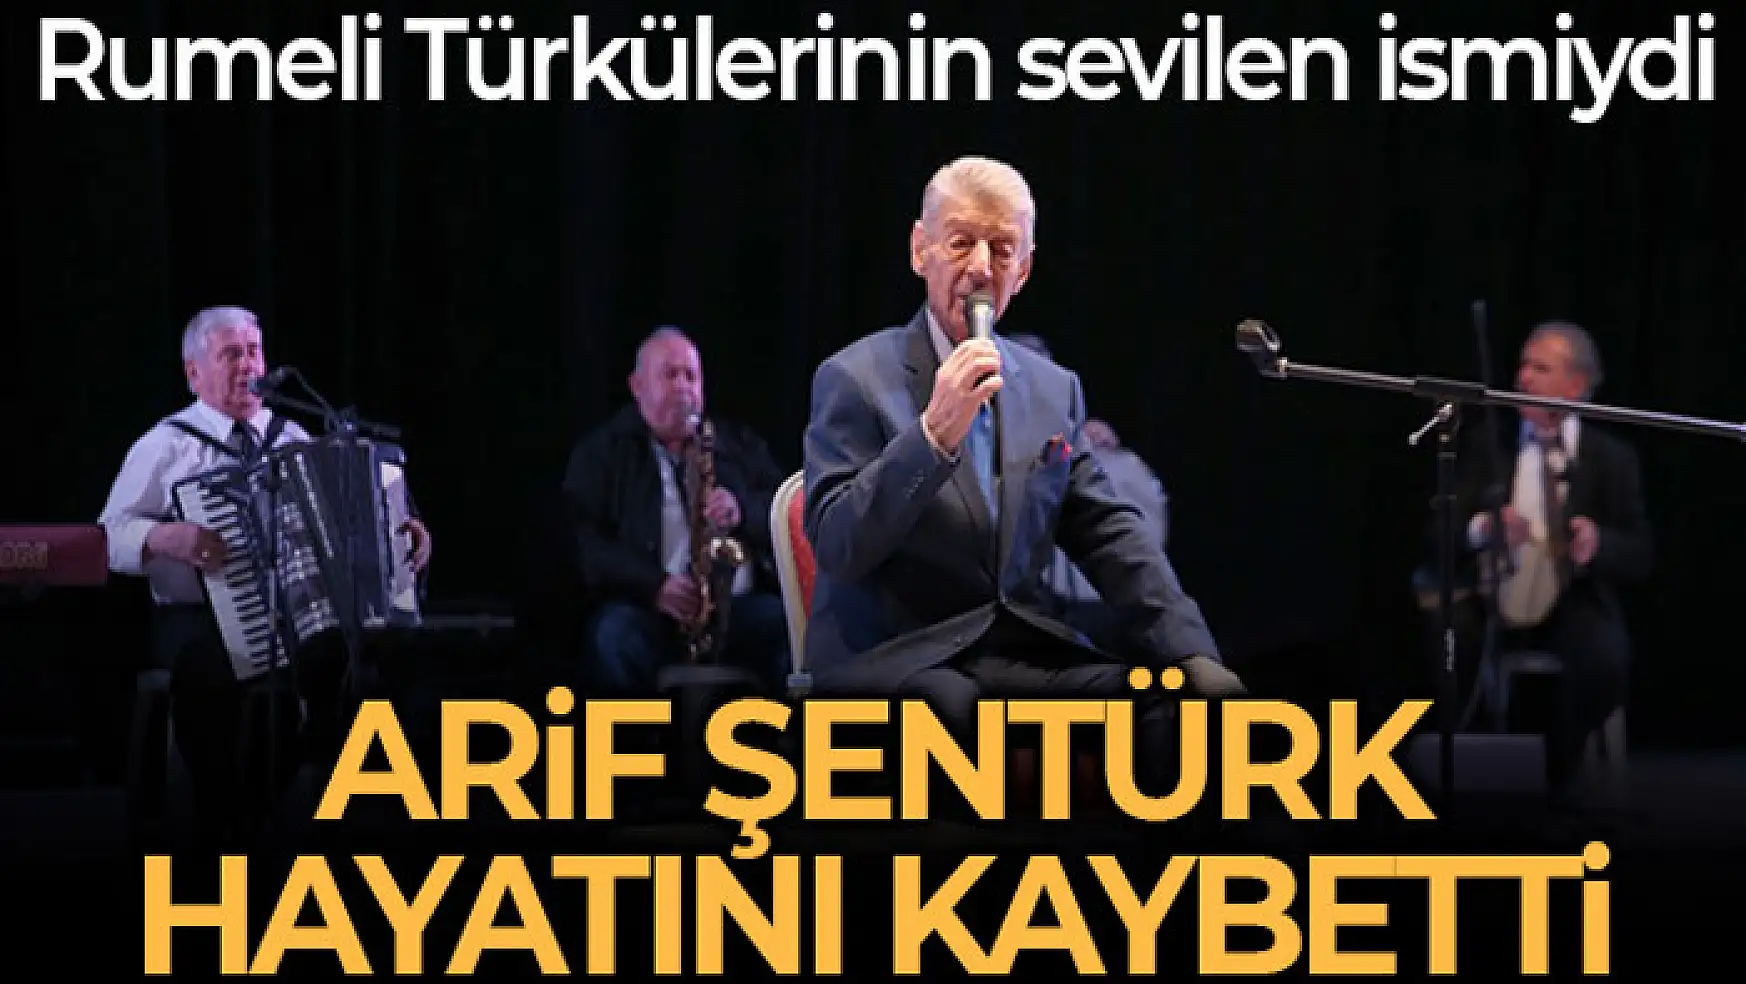 Rumeli Türkülerinin sevilen ismi Arif Şentürk hayatını kaybetti